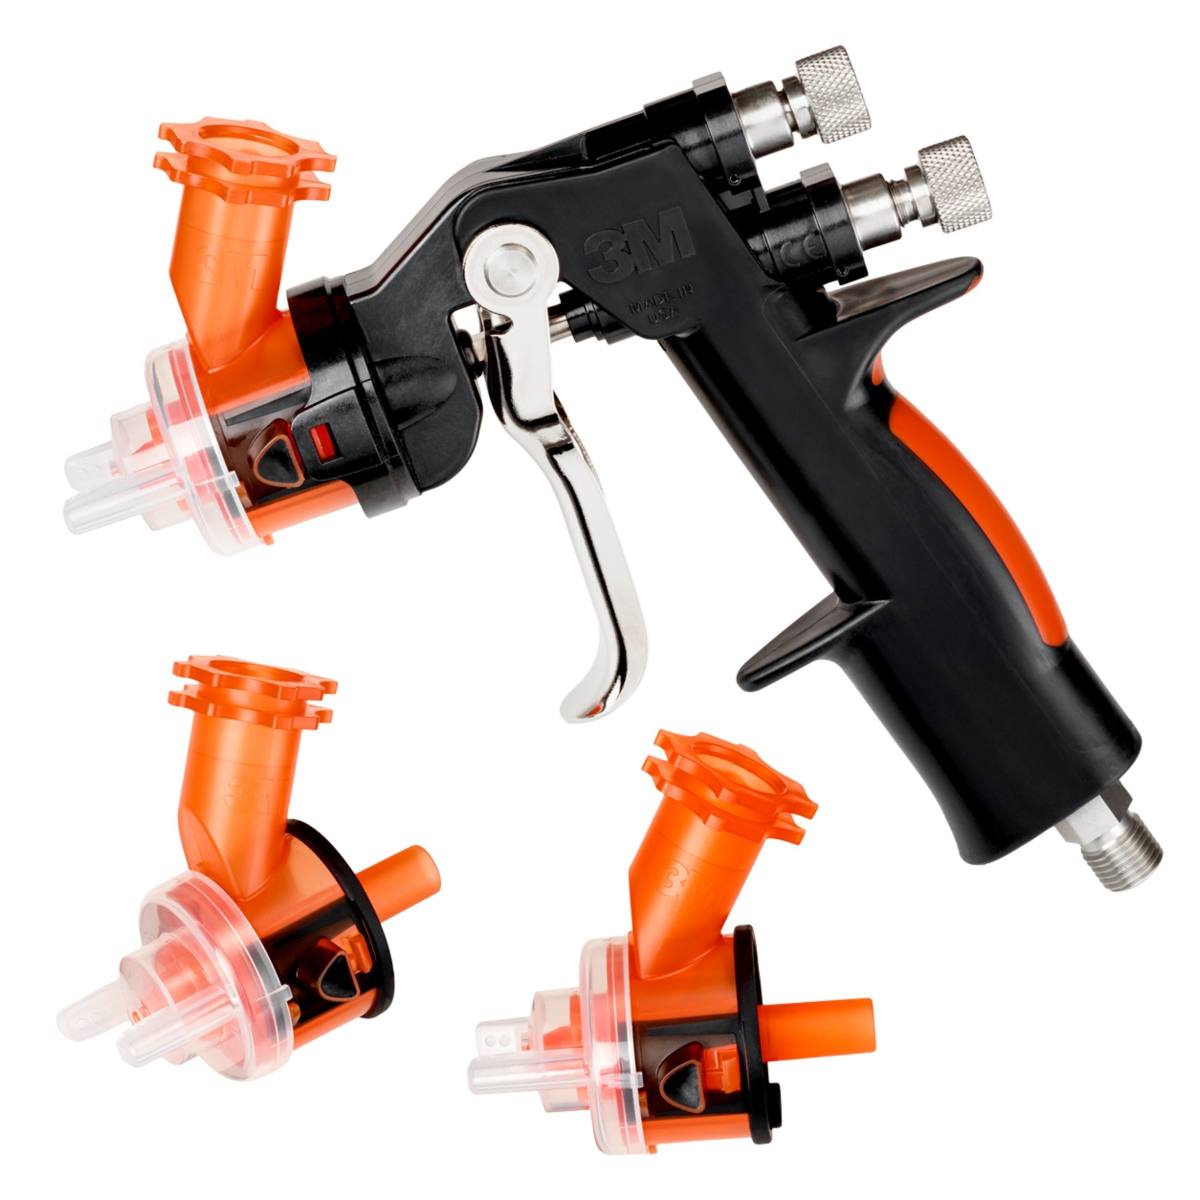 Pistolet 3M Accuspray HG14, contenu de l'emballage : 1x pistolet, 3x têtes de buses 1,4mm orange 16612, 1x manomètre #16577